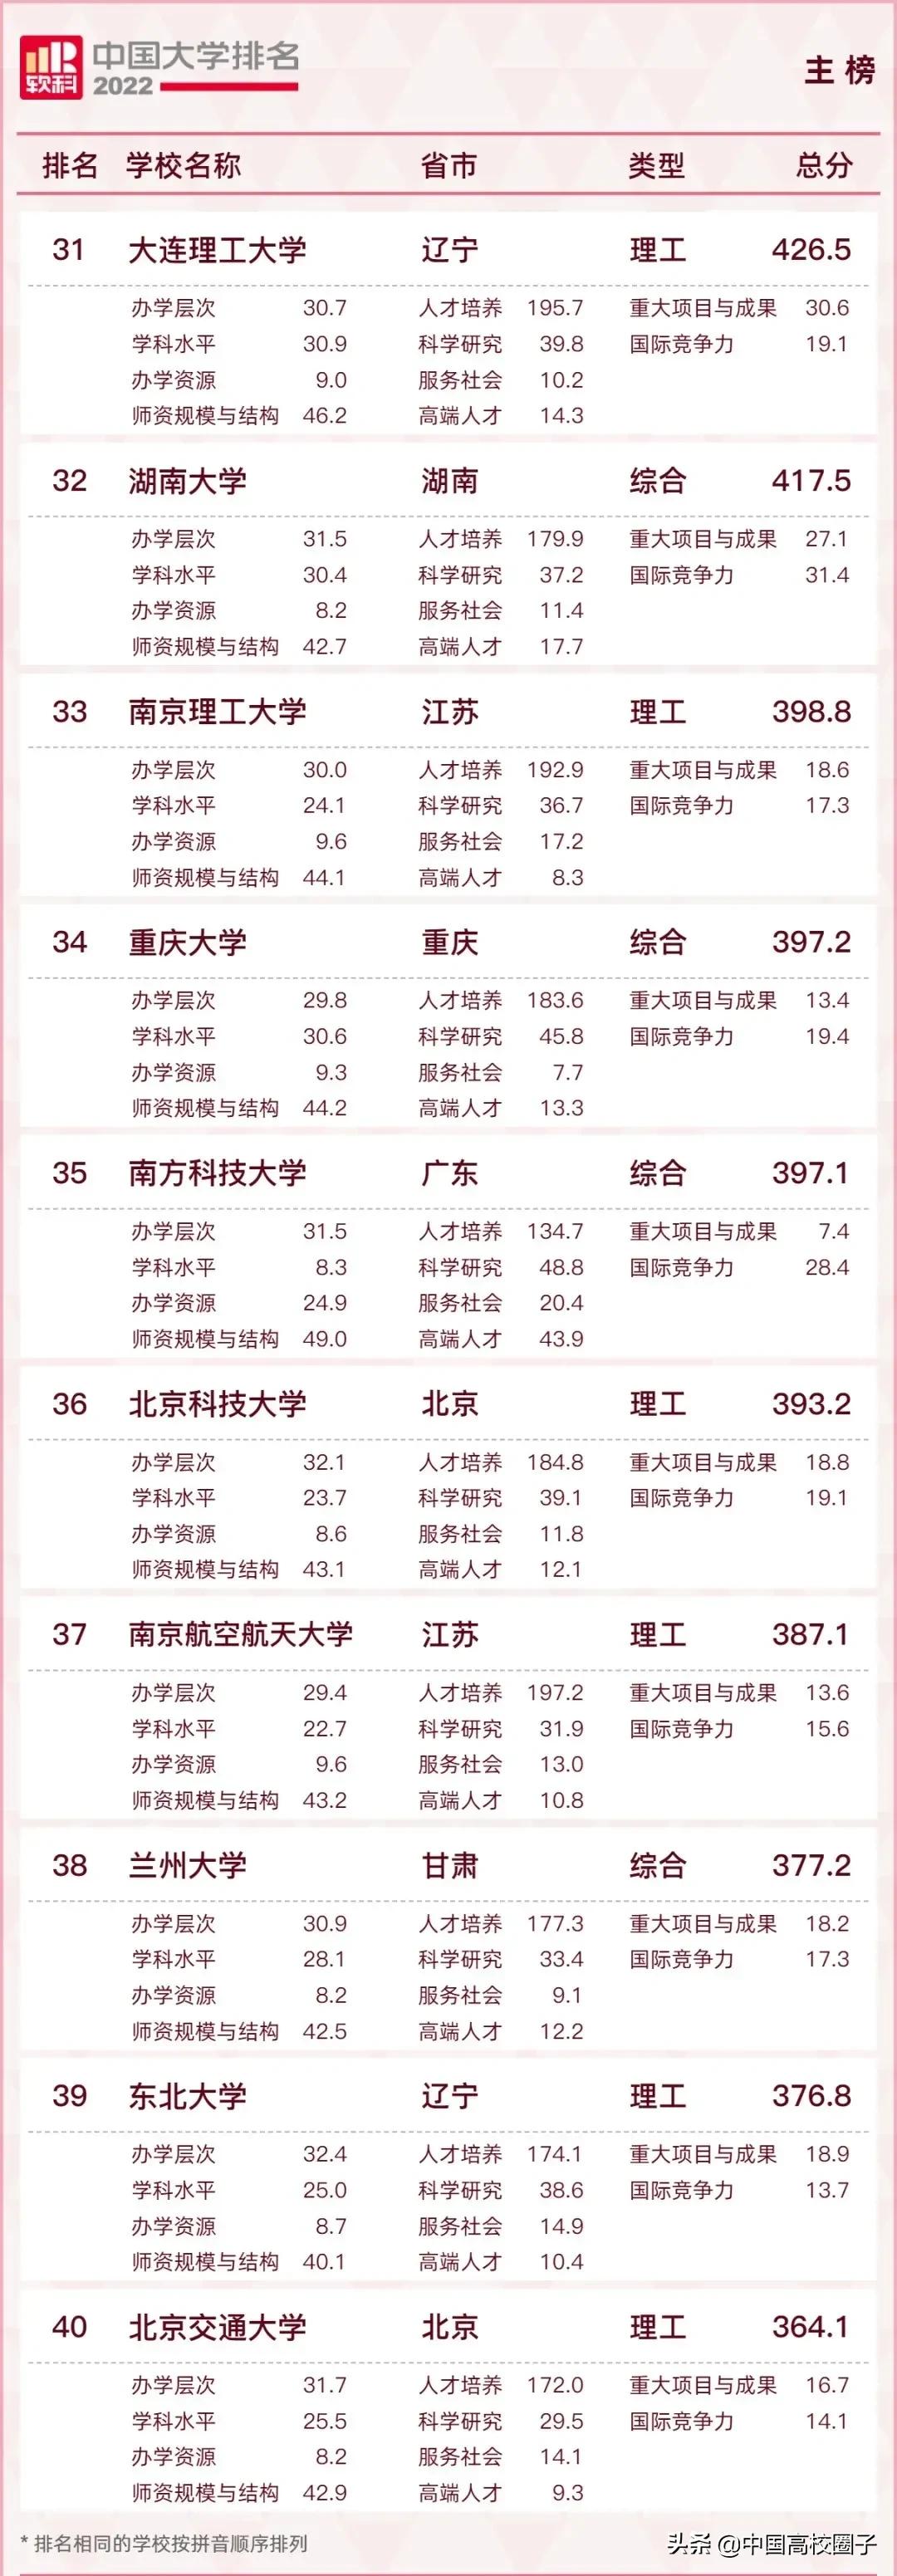 2022年中国大学排名